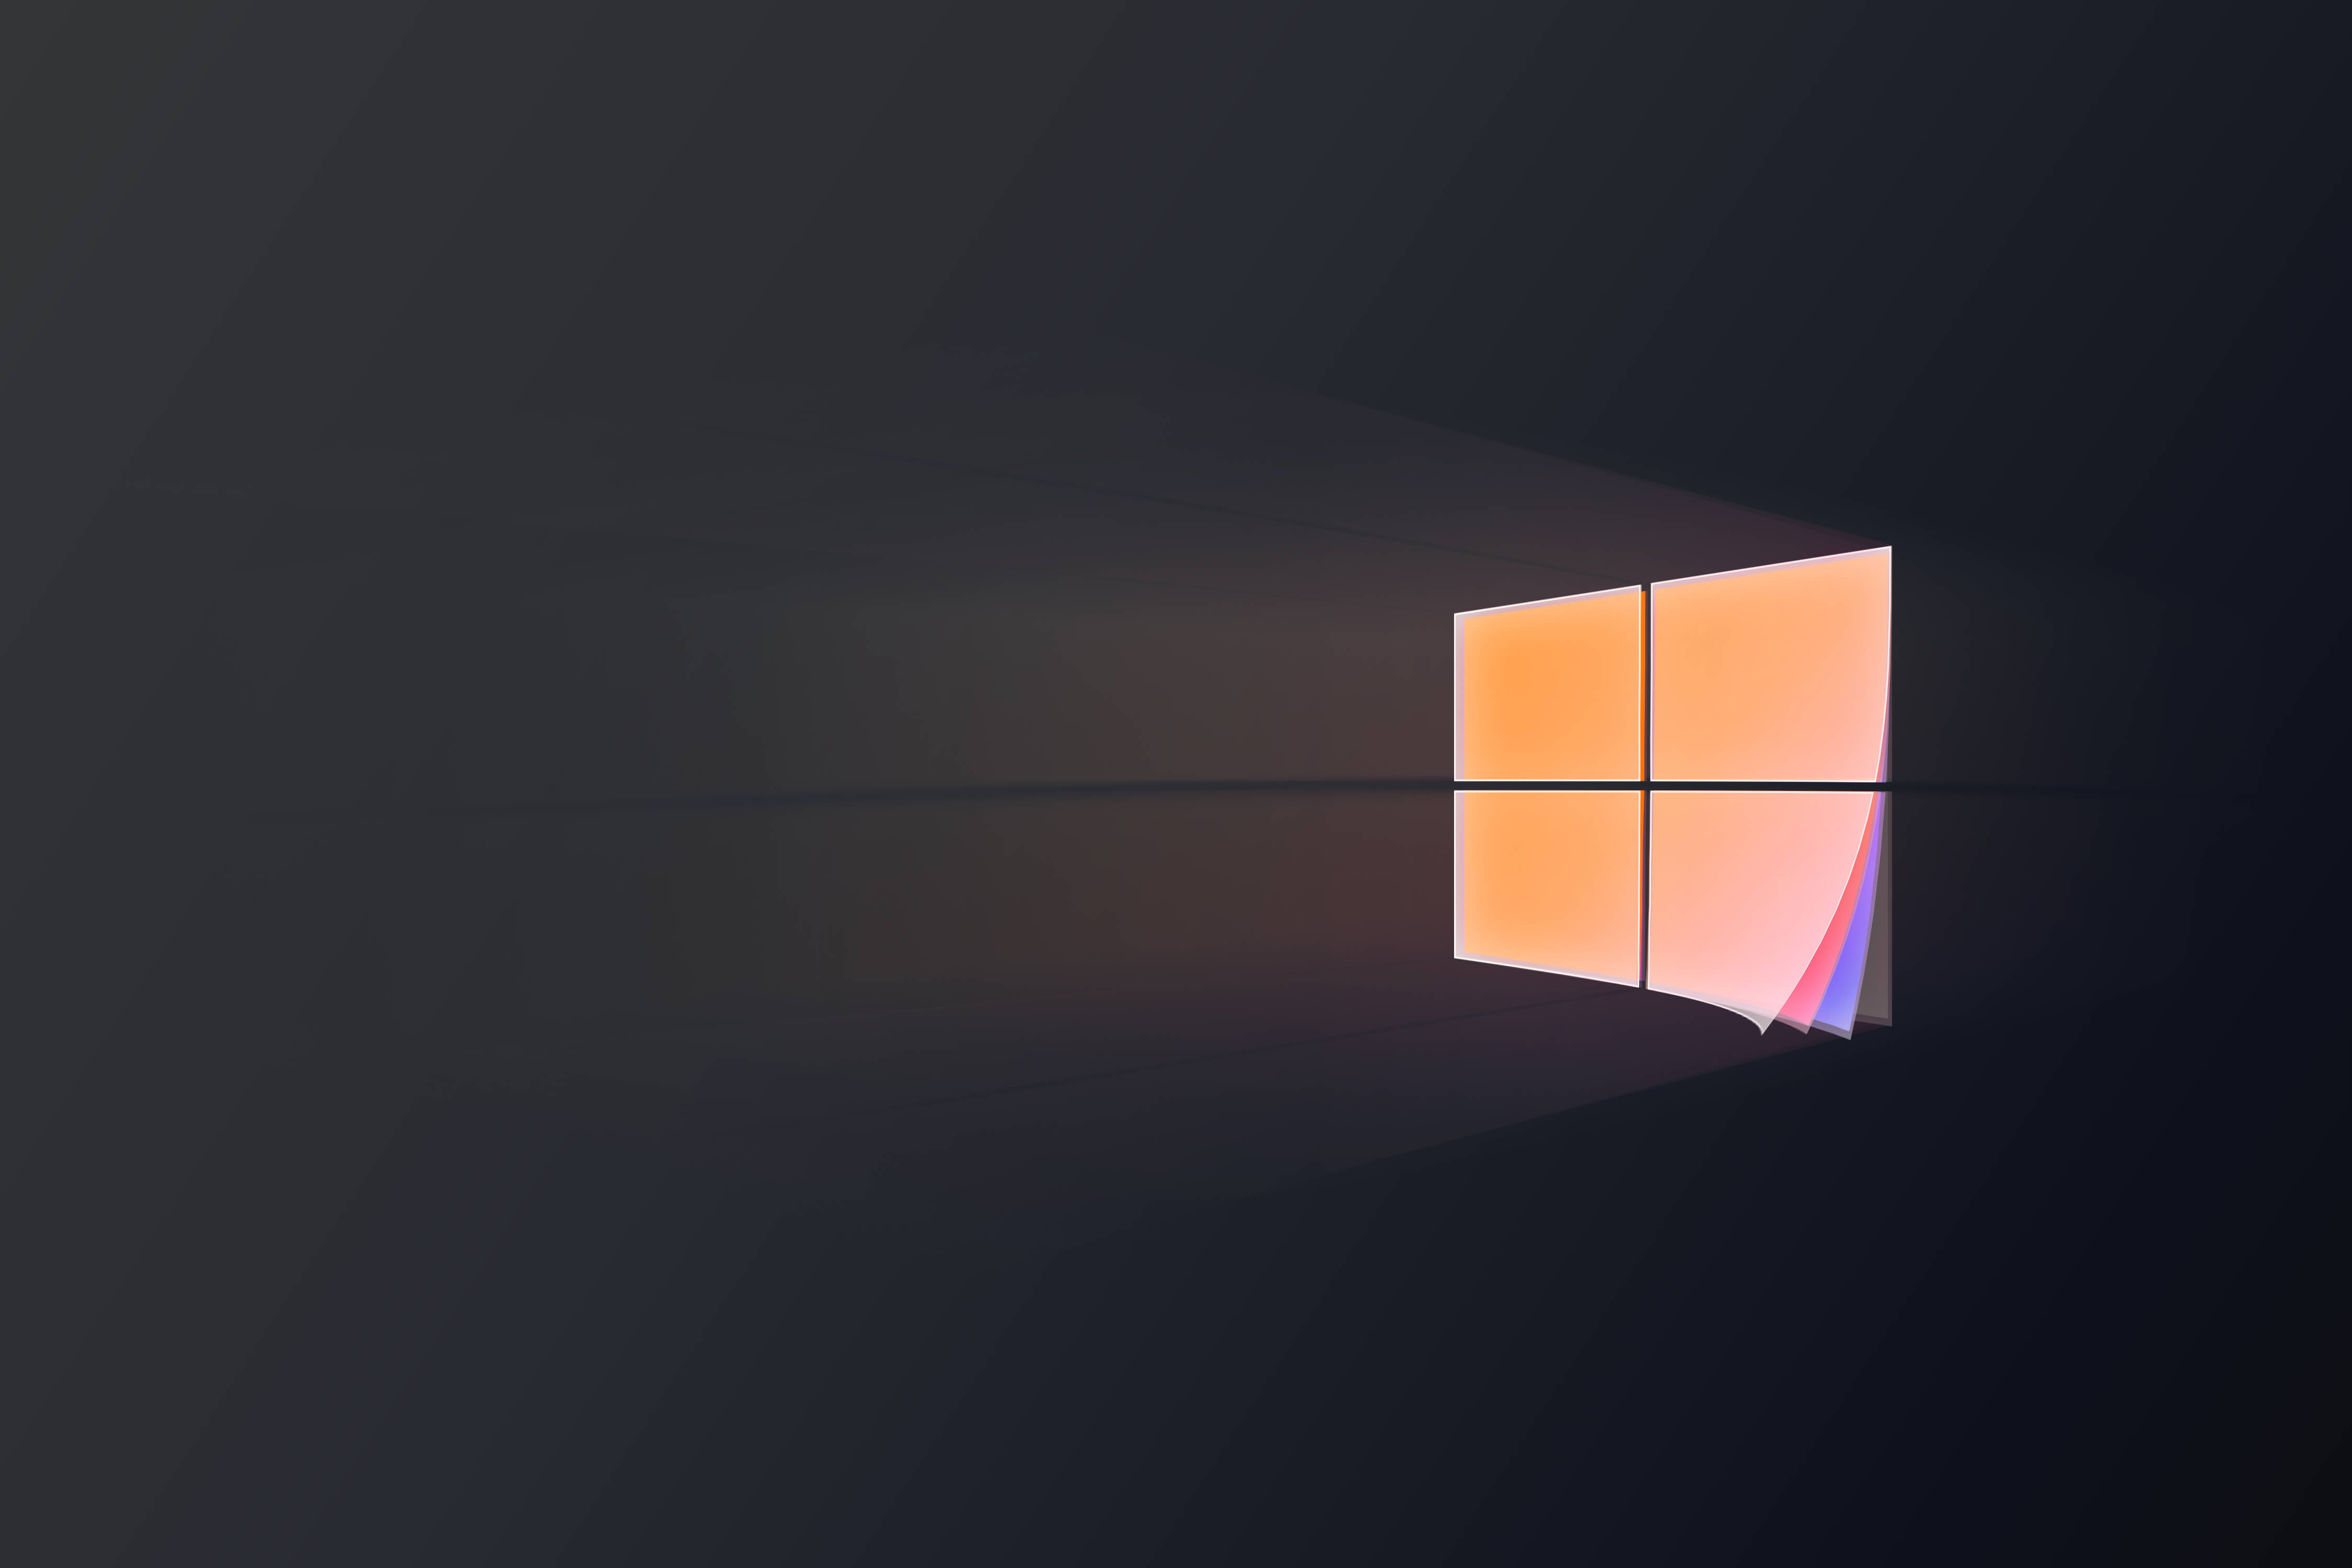 Thiết kế Fluent cho Logo Windows 10 mang đến cho bạn cảm giác hiện đại và độc đáo. Hãy đón chào một giao diện mới đầy tươi sáng cho thiết bị của mình.